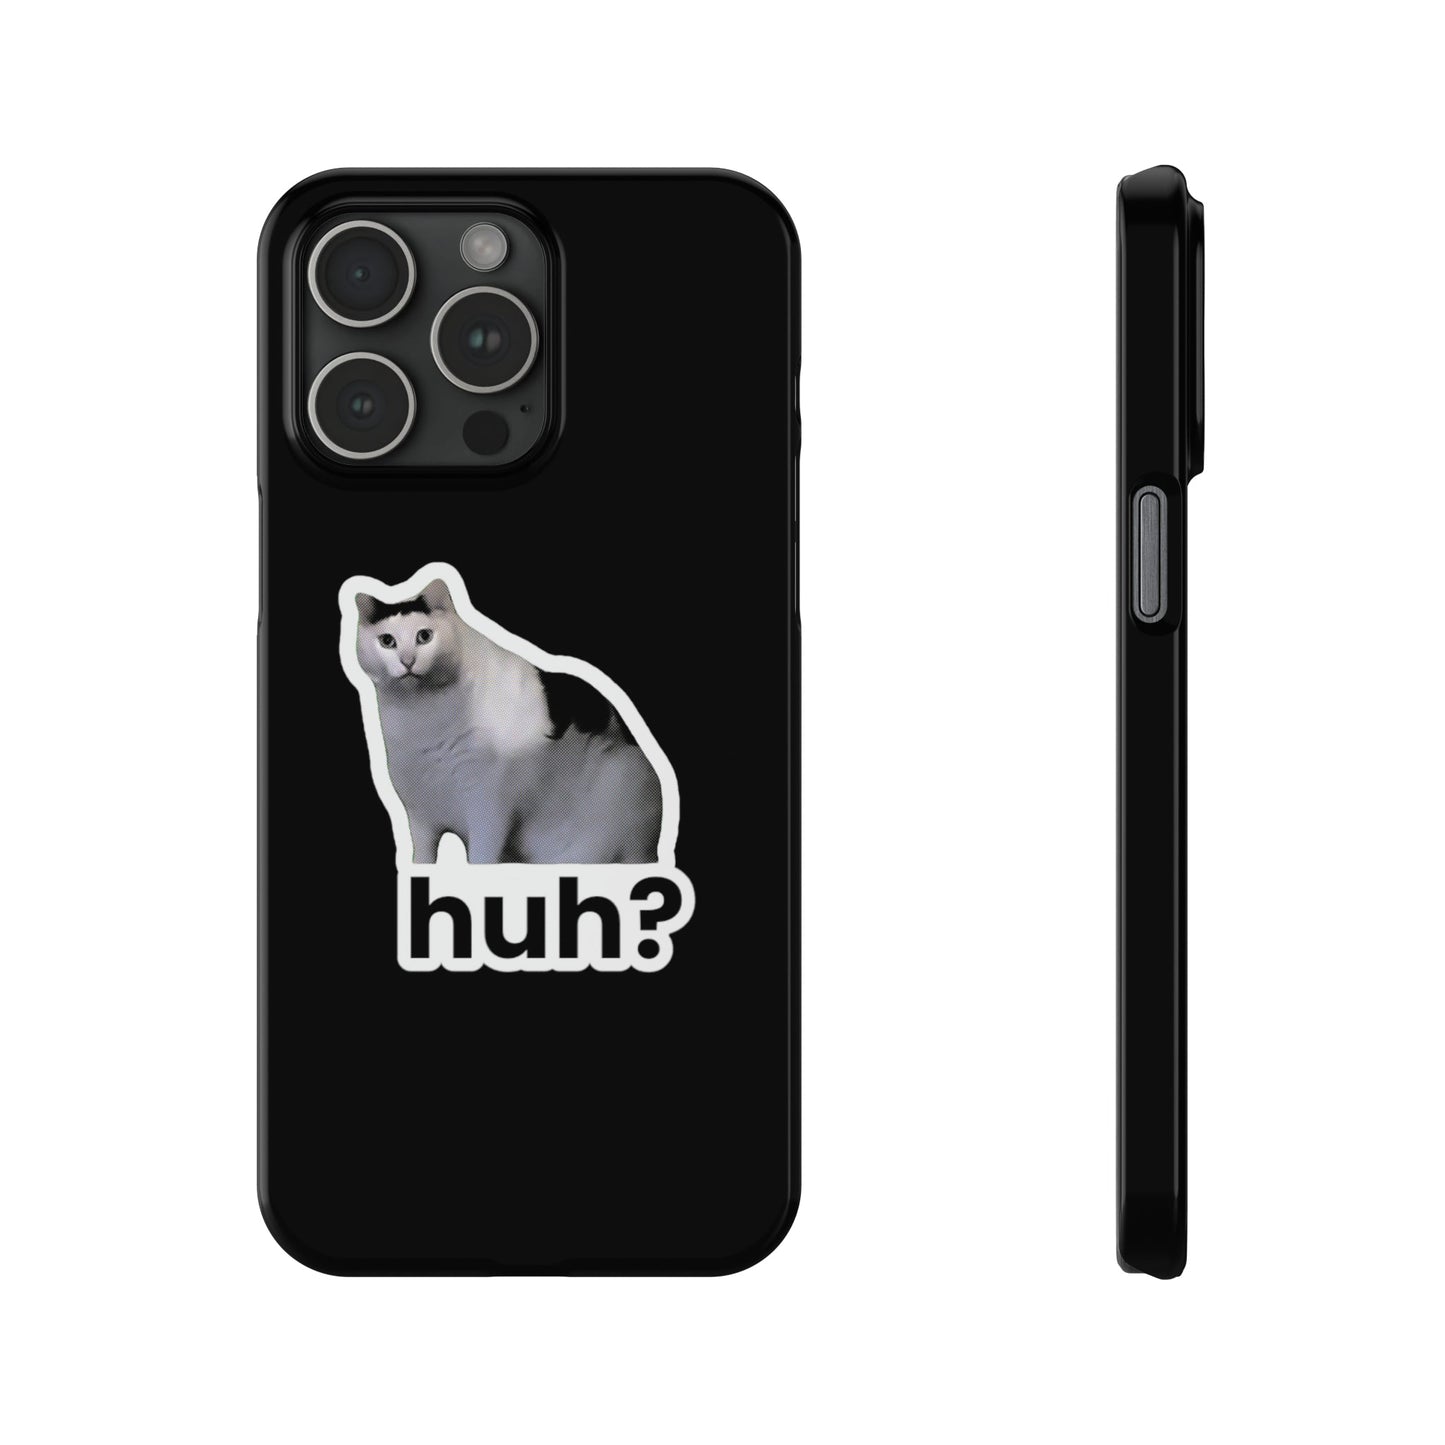 Huh Cat Meme Slim iPhone Cases - getallfun